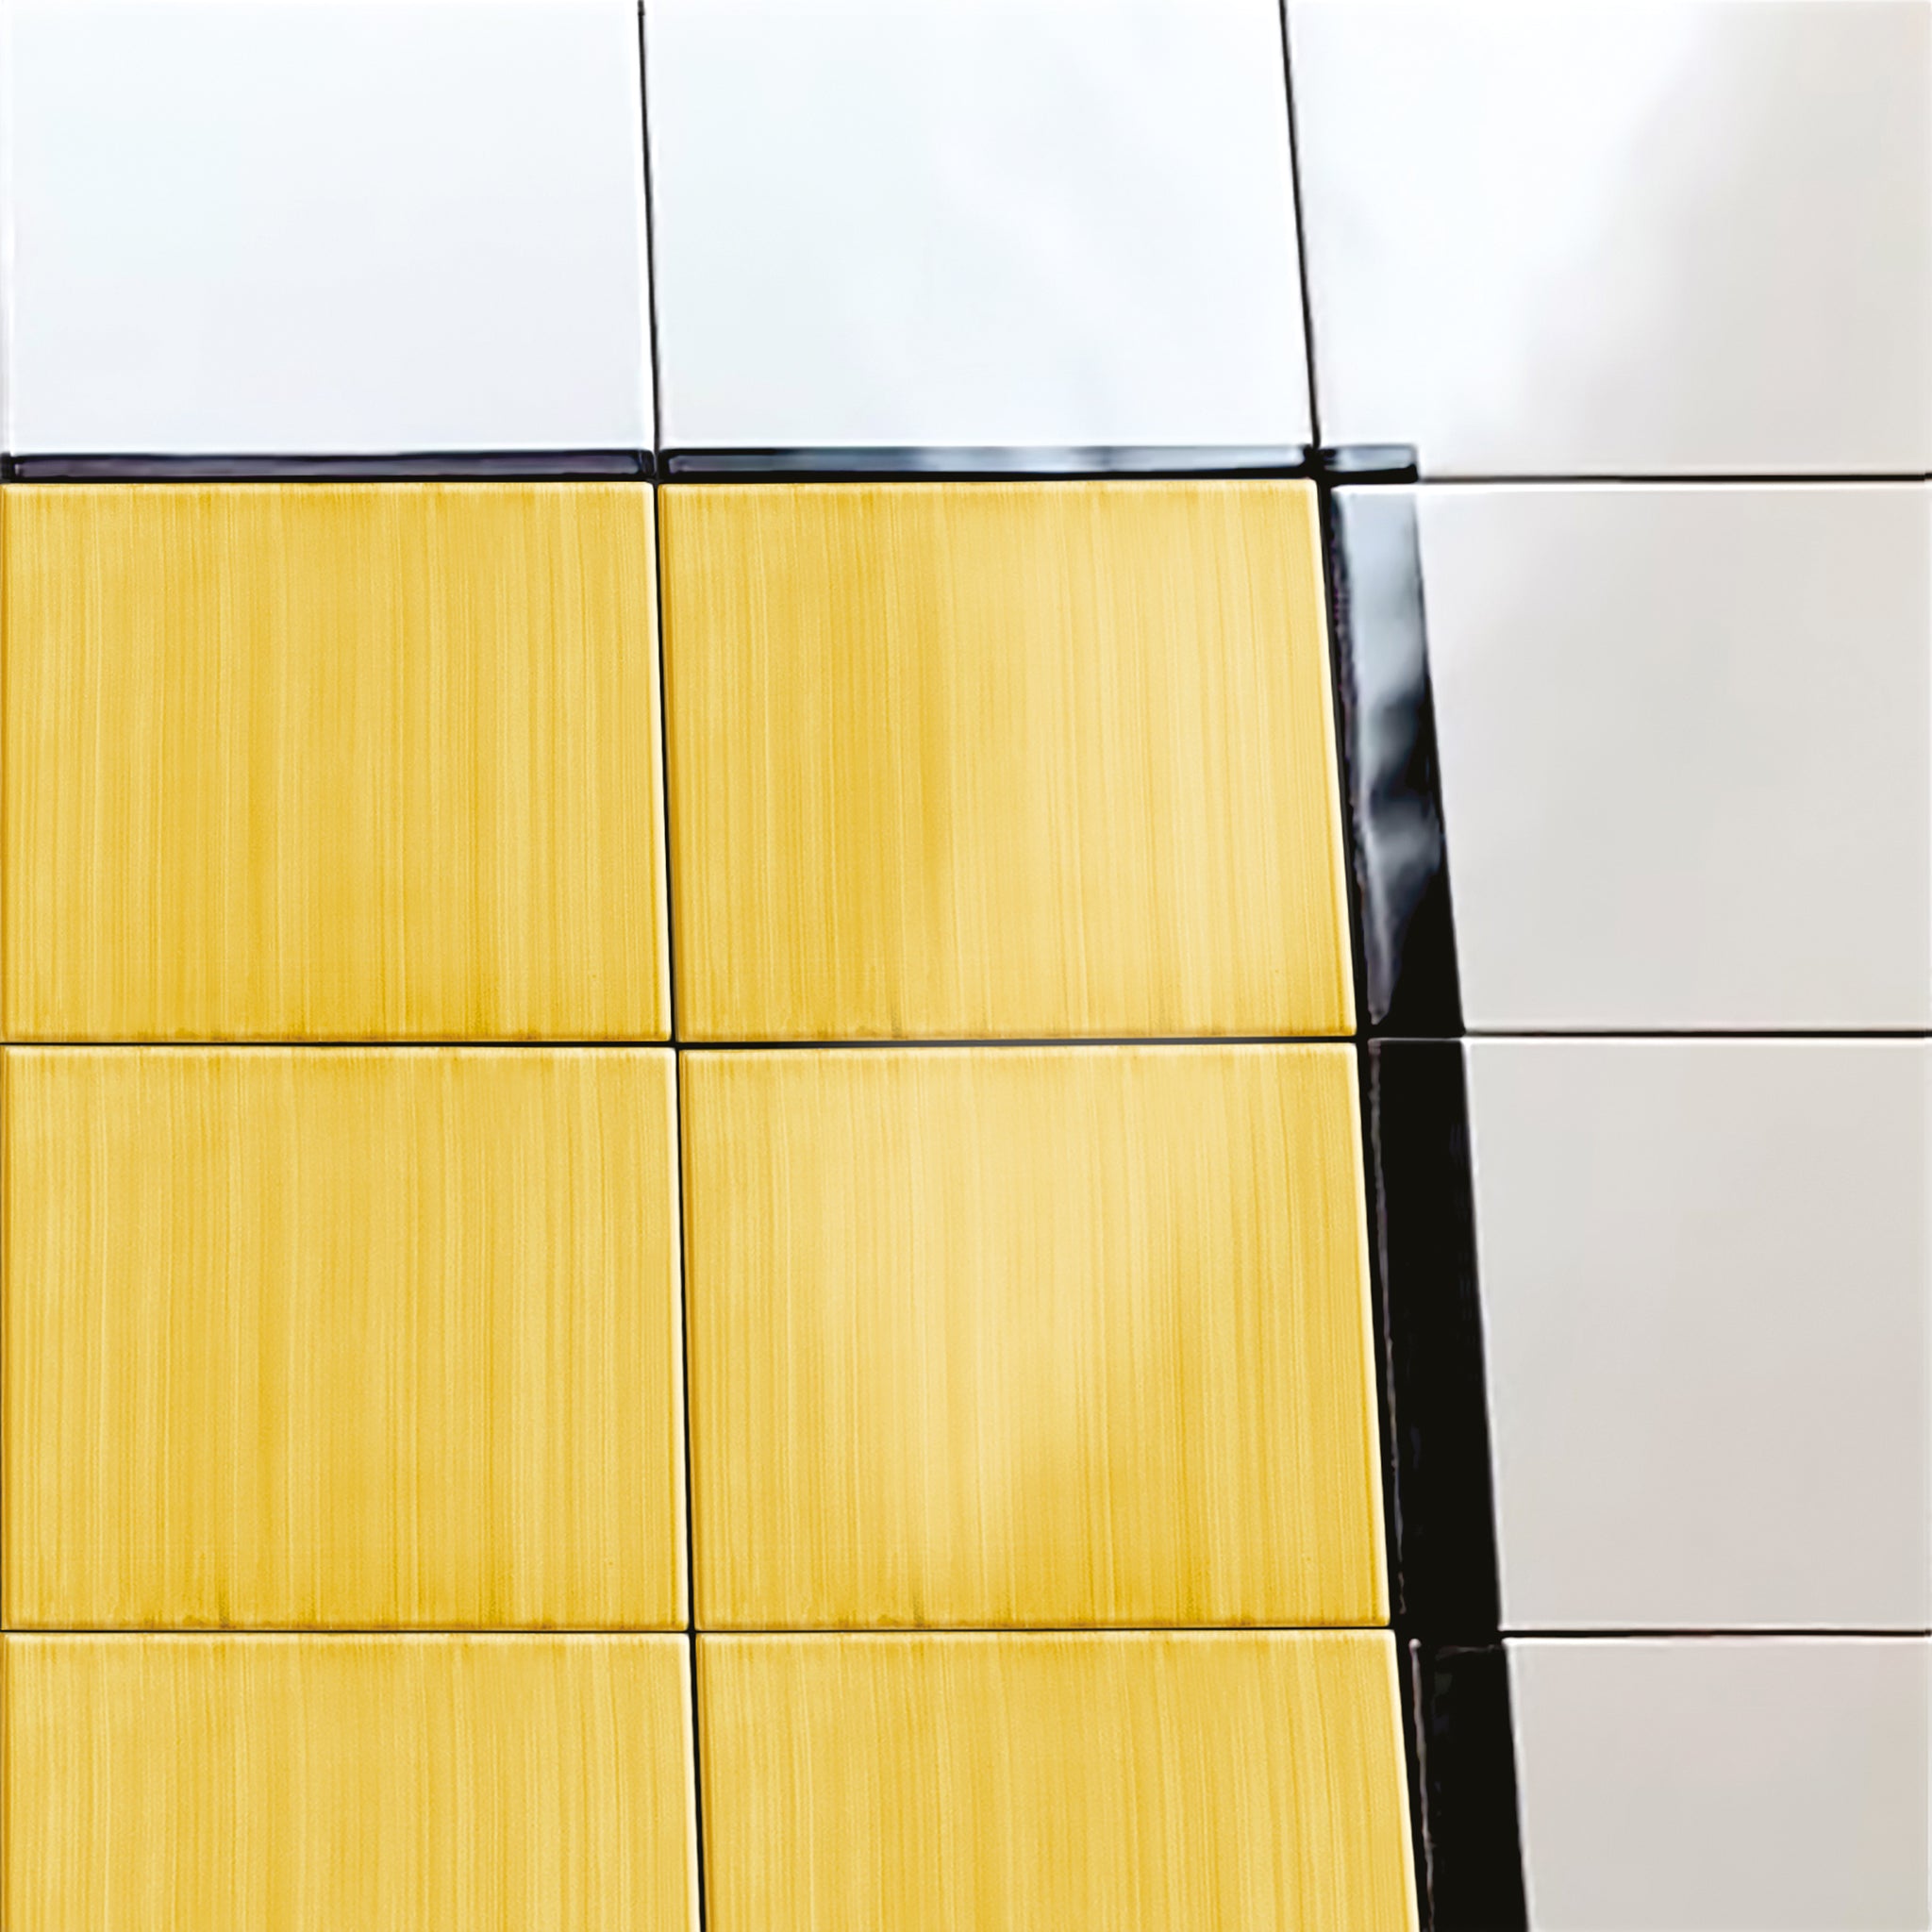 Carpet Total Yellow Ceramic Composition by Giuliano Andrea dell’Uva 120 X 80 - Alternative view 3